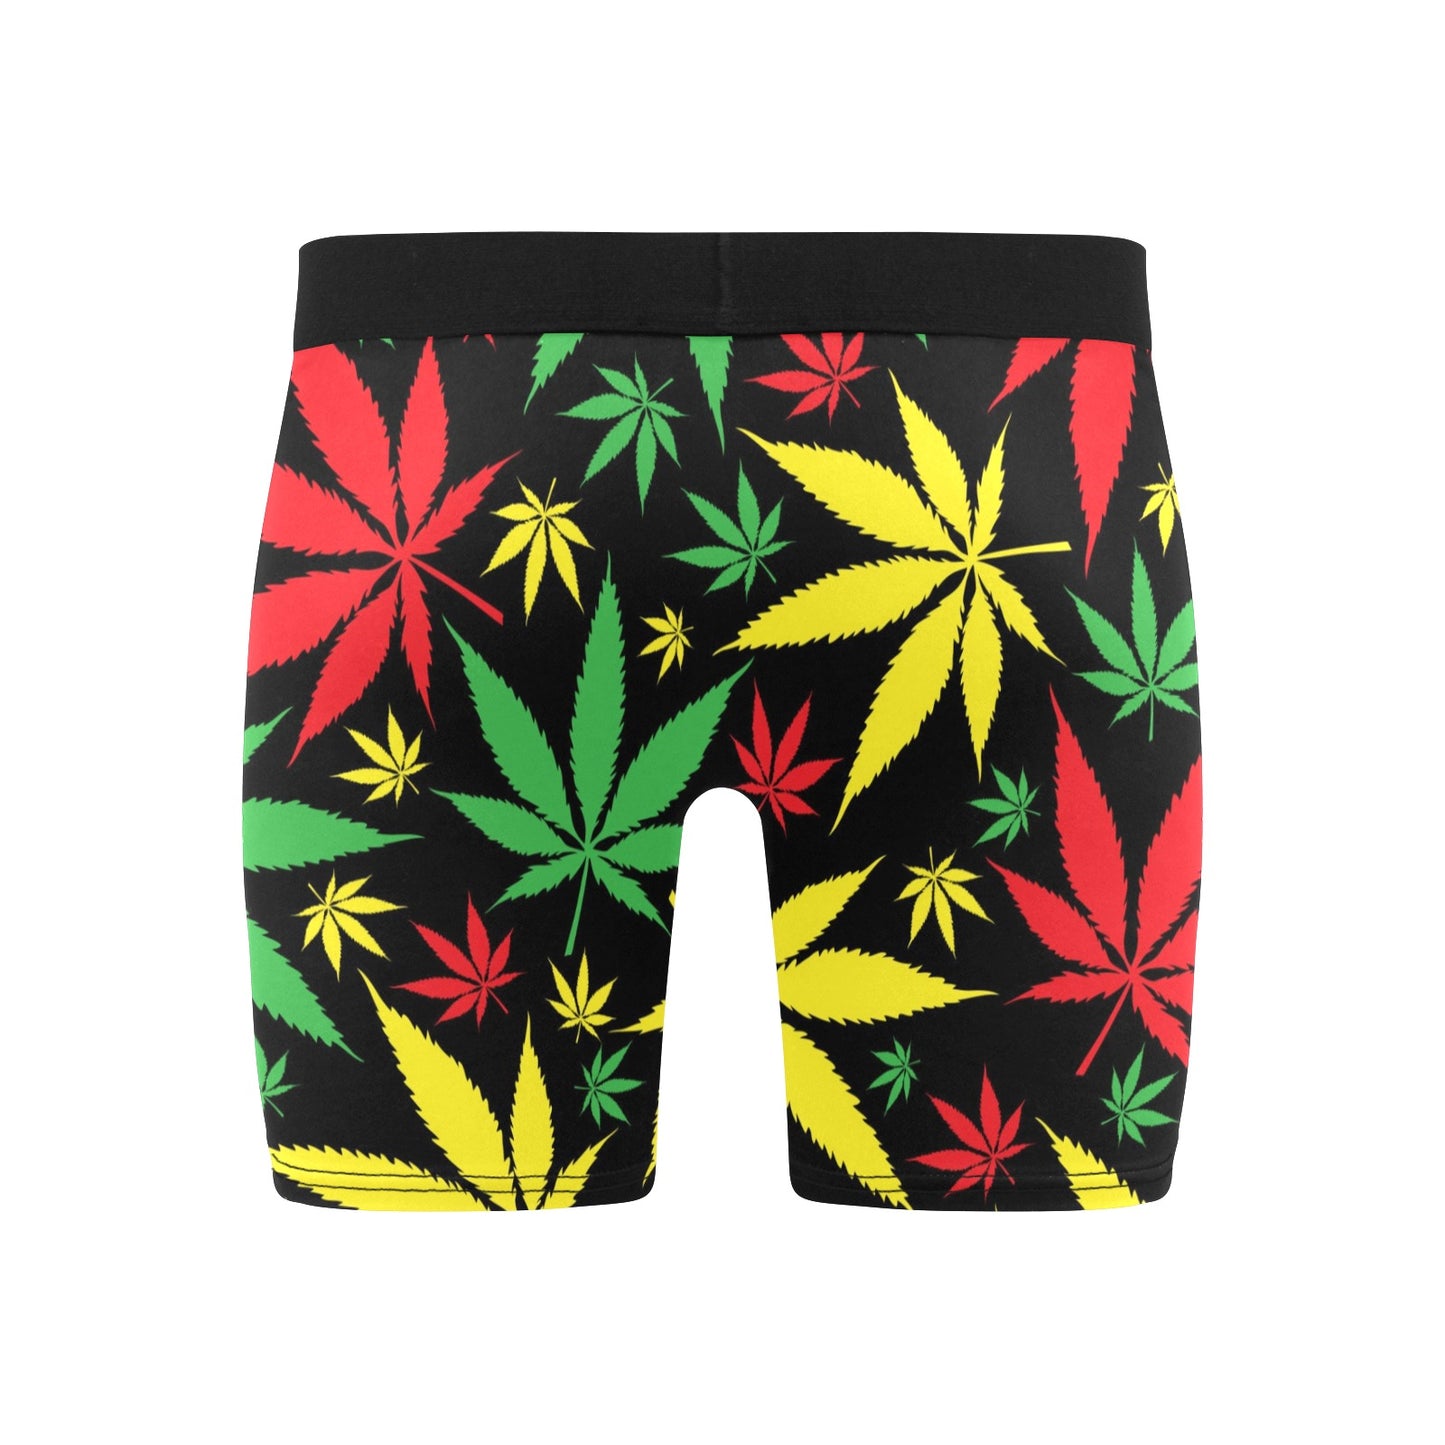 Zen Boxers Long - Jamaican Marijuana